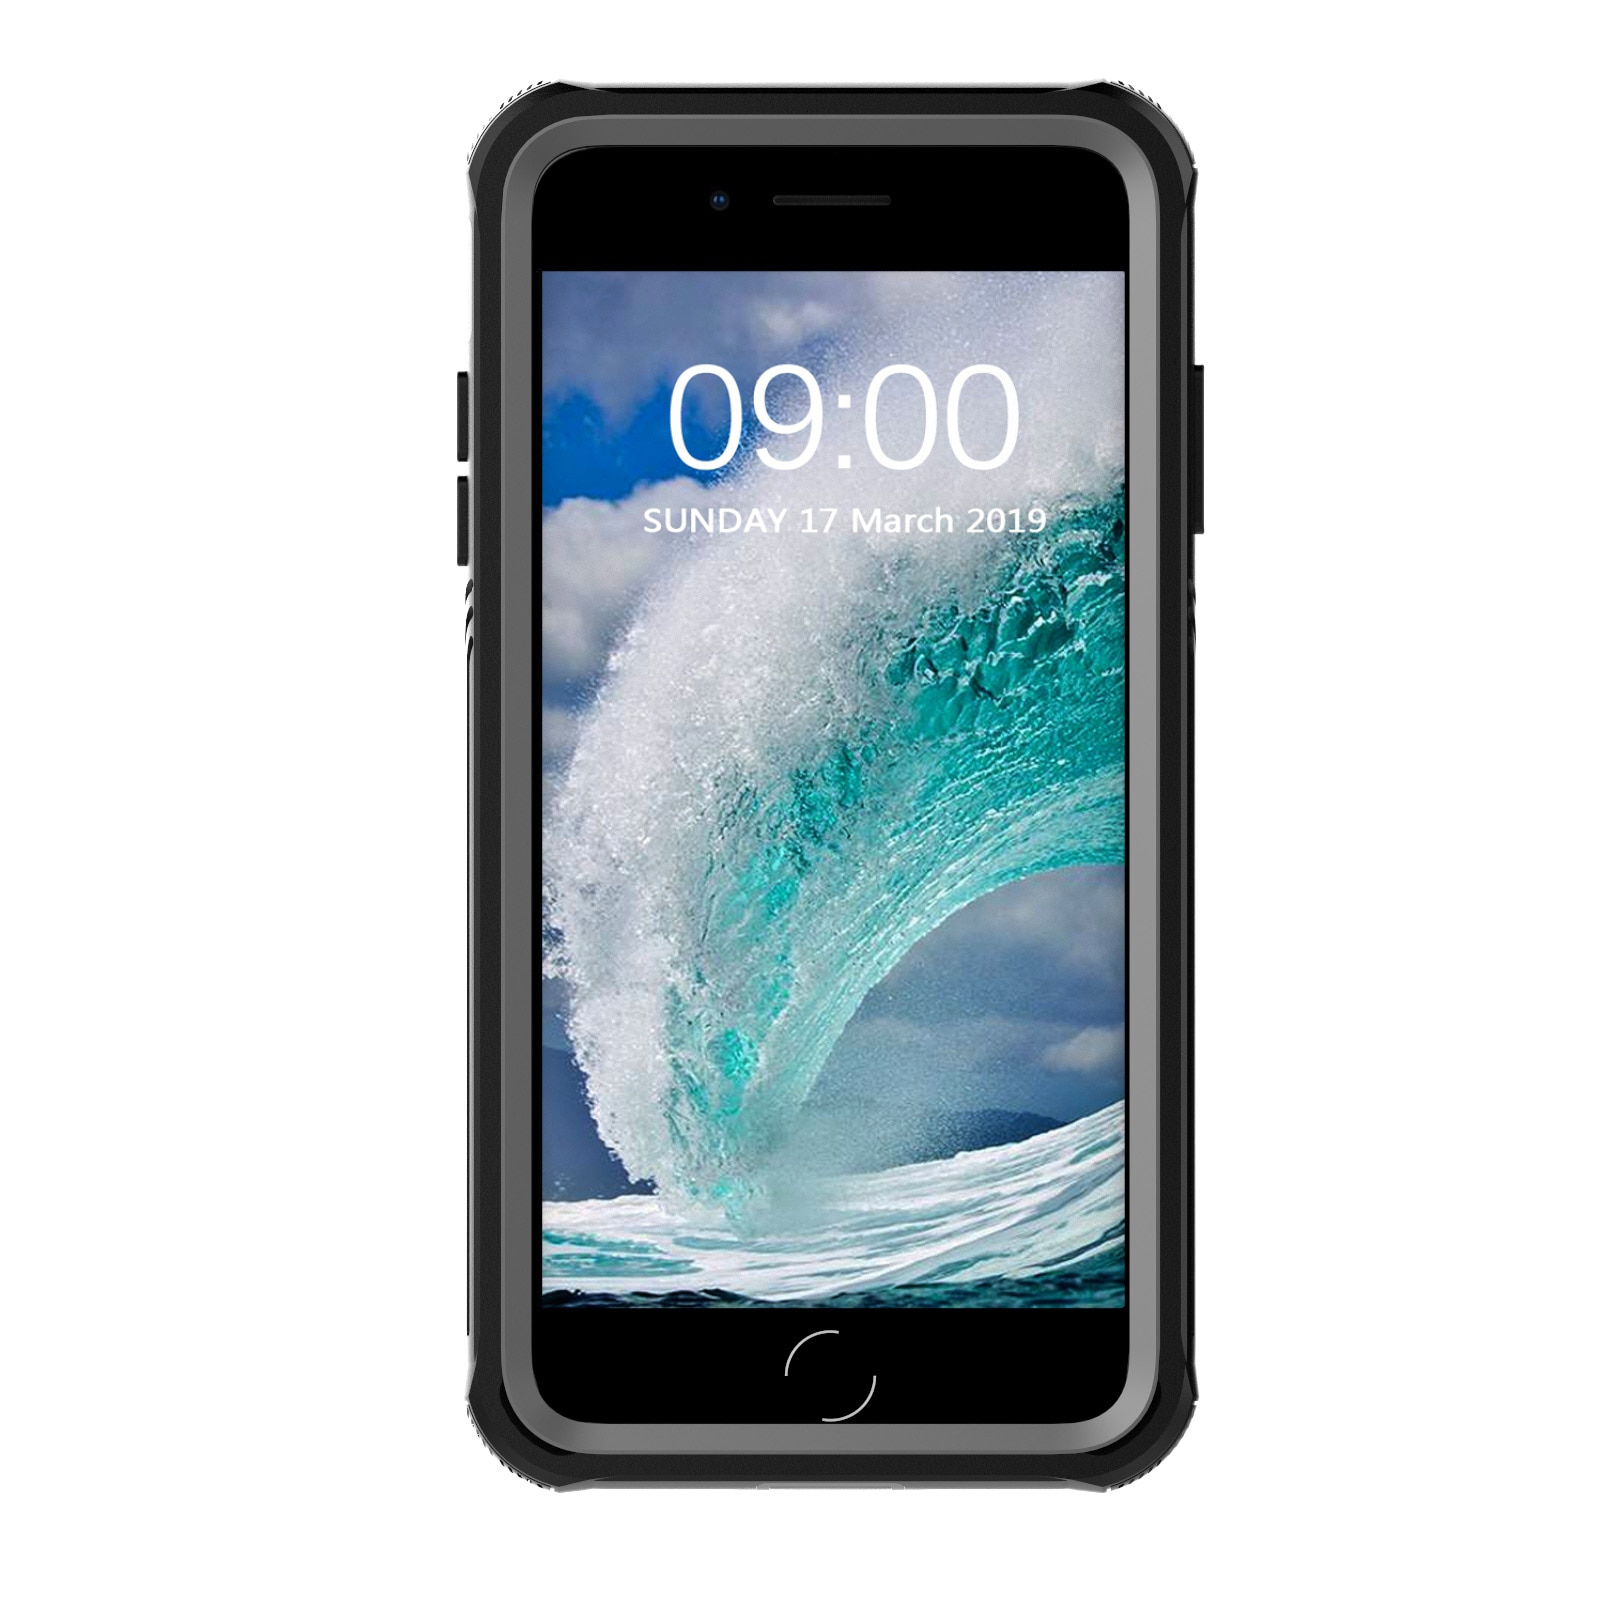 Premium Full Protection Case iPhone 7 Plus/8 Plus Black